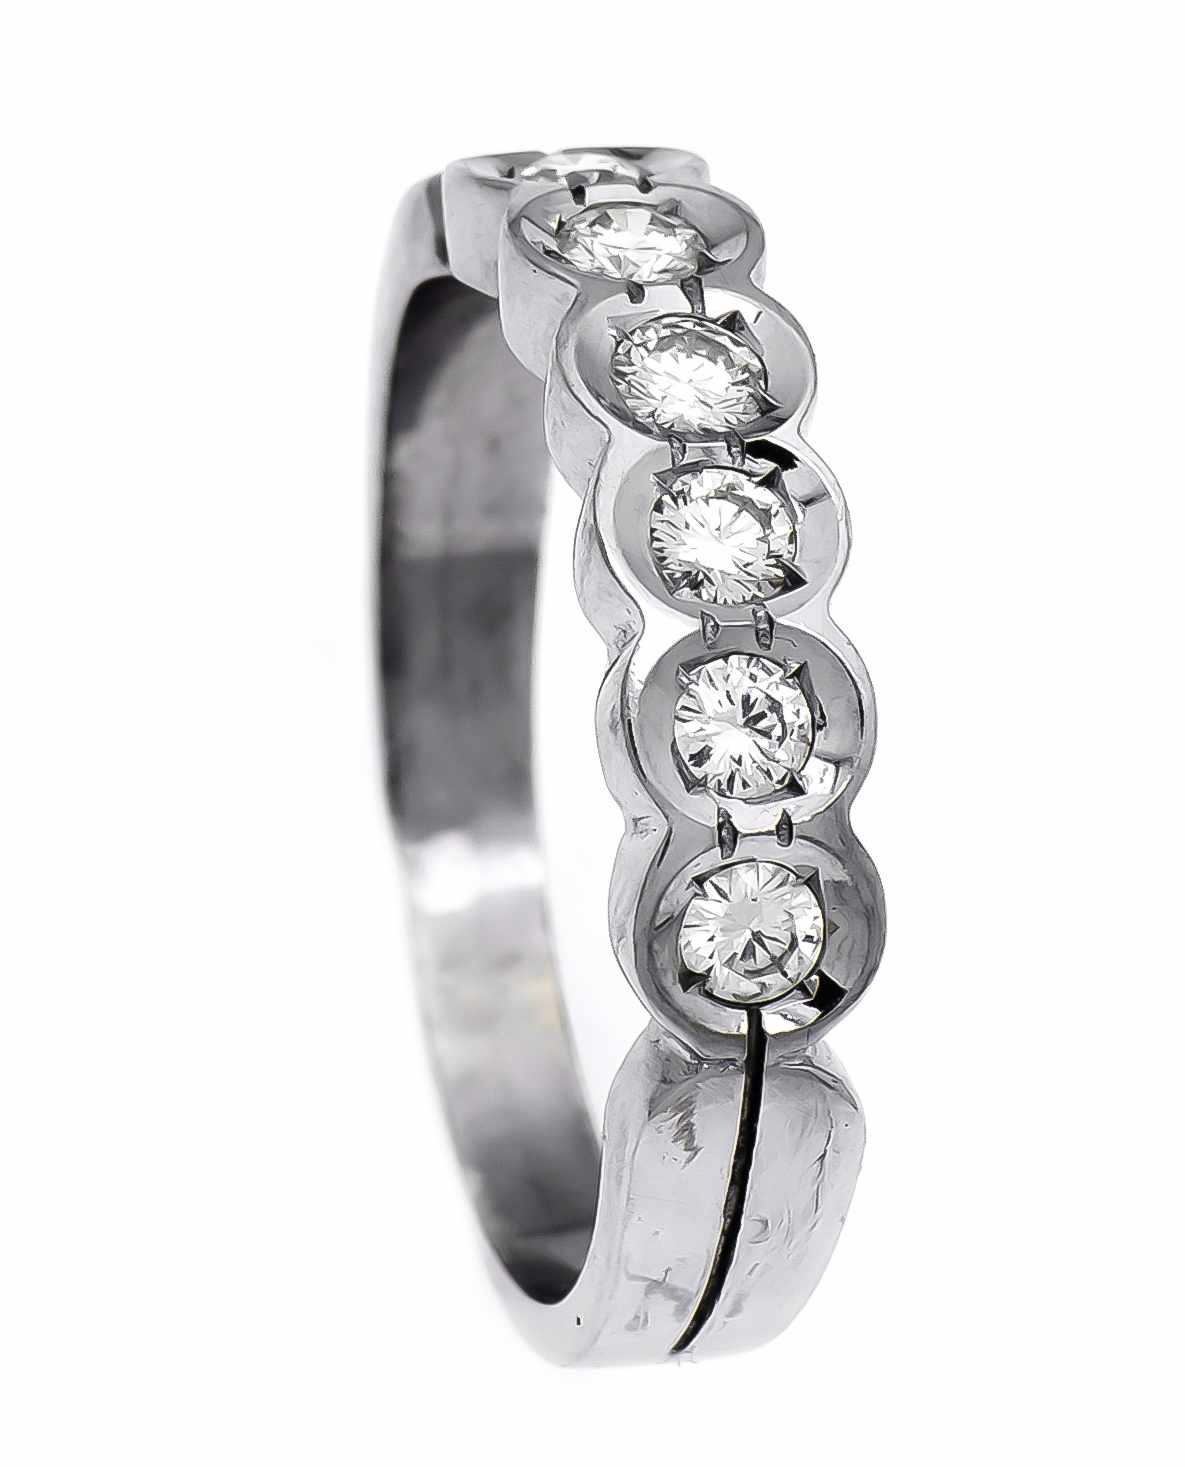 Brillant-Ring WG 585/000 mit 5 Brillanten, zus. 0,50 ct TW/VVS, RG 57, 4,5 g